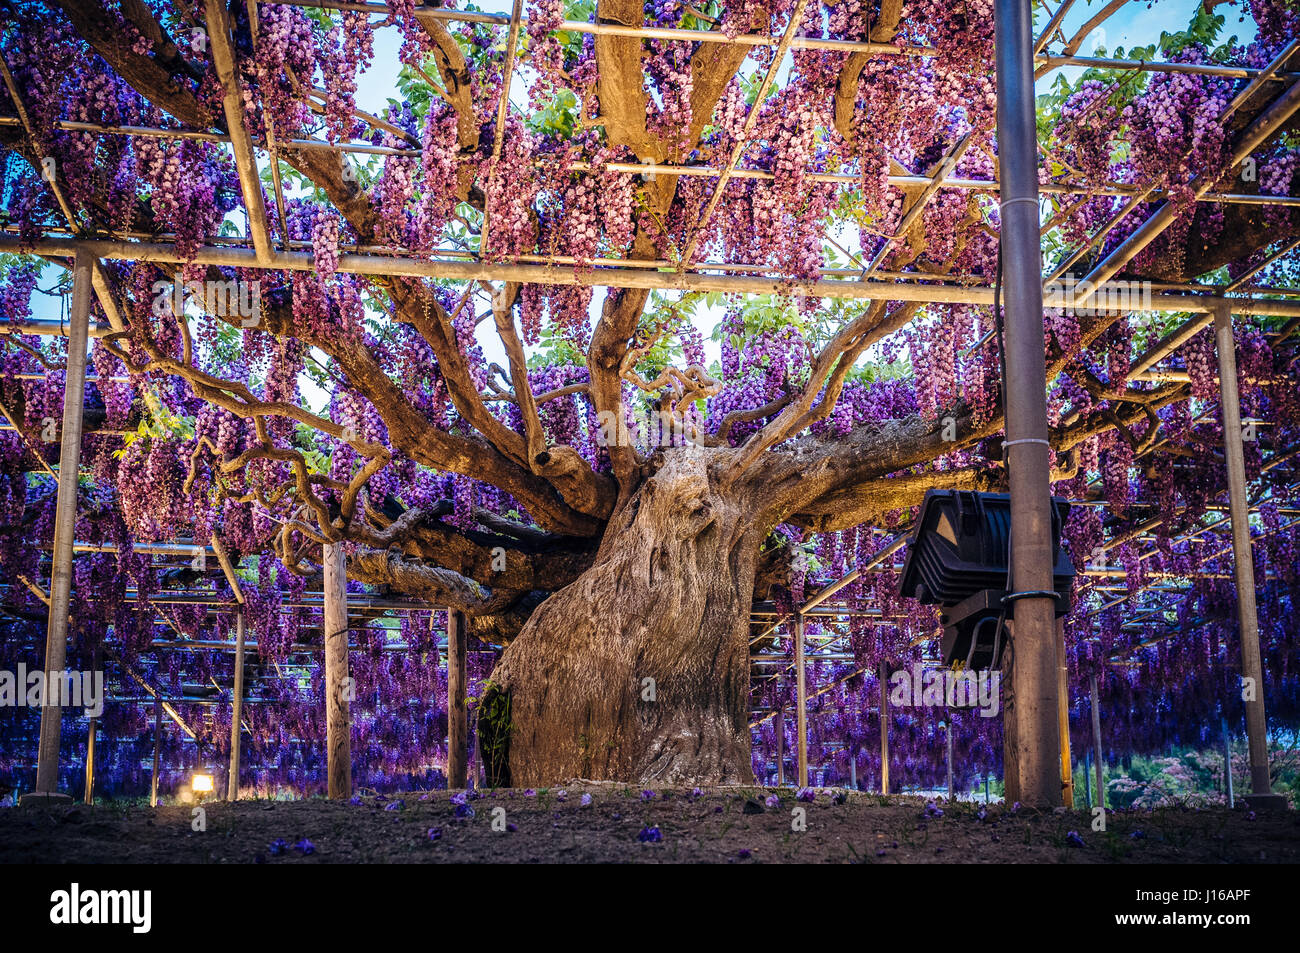 Come una versione reale dell'albero della vita dal film Avatar questo  144-anno antico glicine in piena fioritura è uno spettacolo per gli occhi.  Appeso a 15 piedi da terra e che coprono